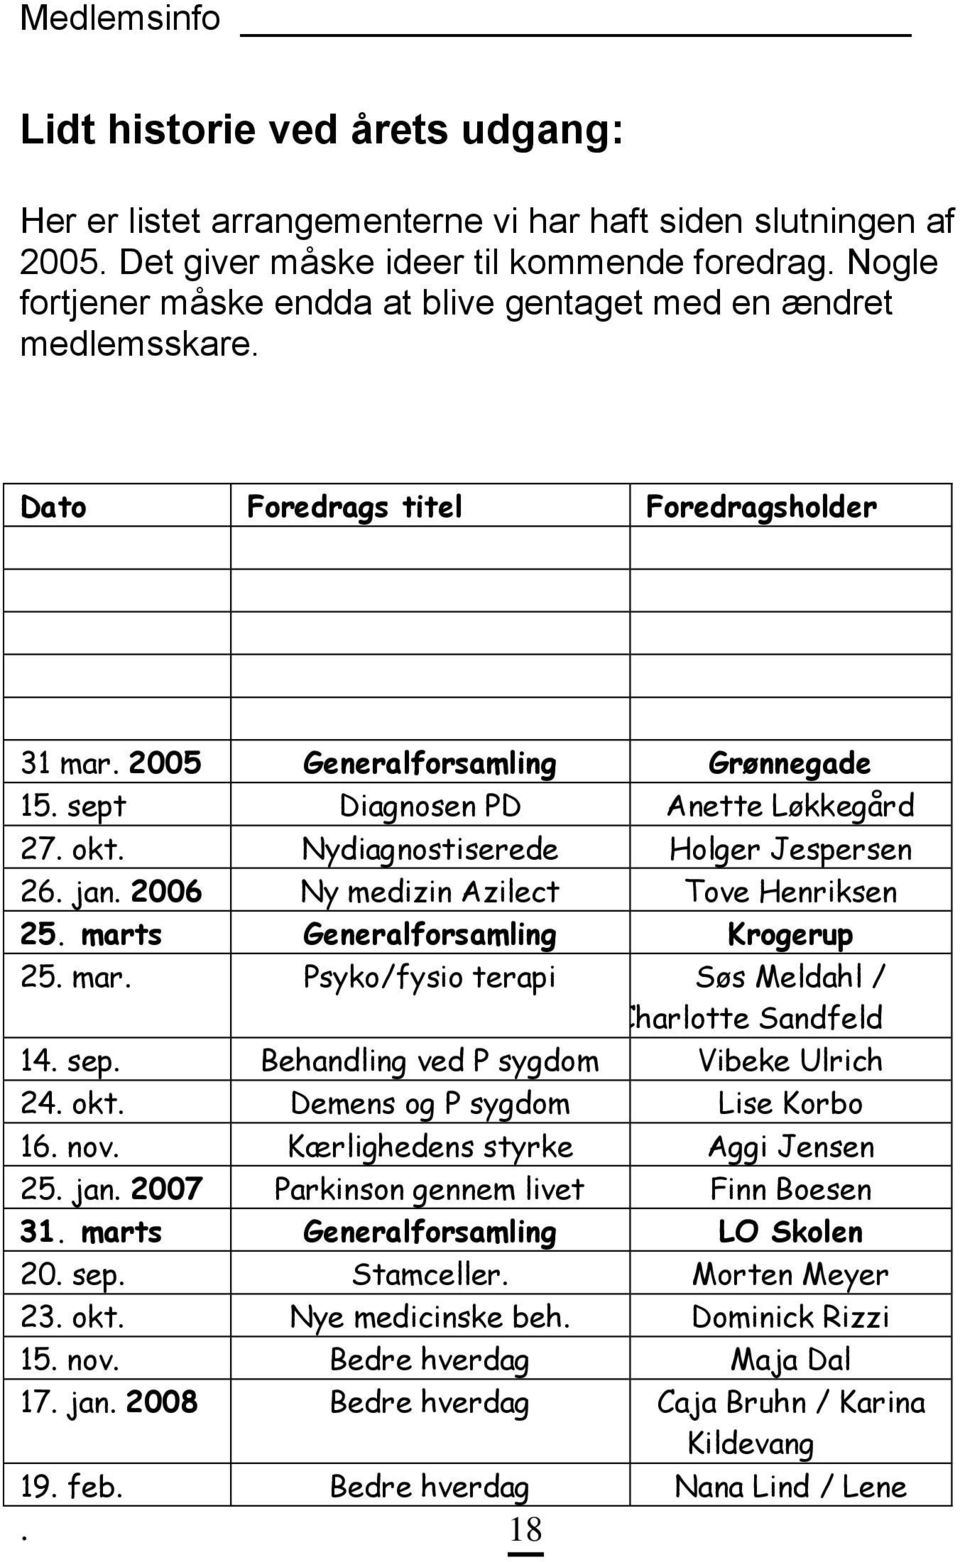 Nydiagnostiserede Holger Jespersen 26. jan. 2006 Ny medizin Azilect Tove Henriksen 25. marts Generalforsamling Krogerup 25. mar. Psyko/fysio terapi Søs Meldahl / Charlotte Sandfeld 14. sep.